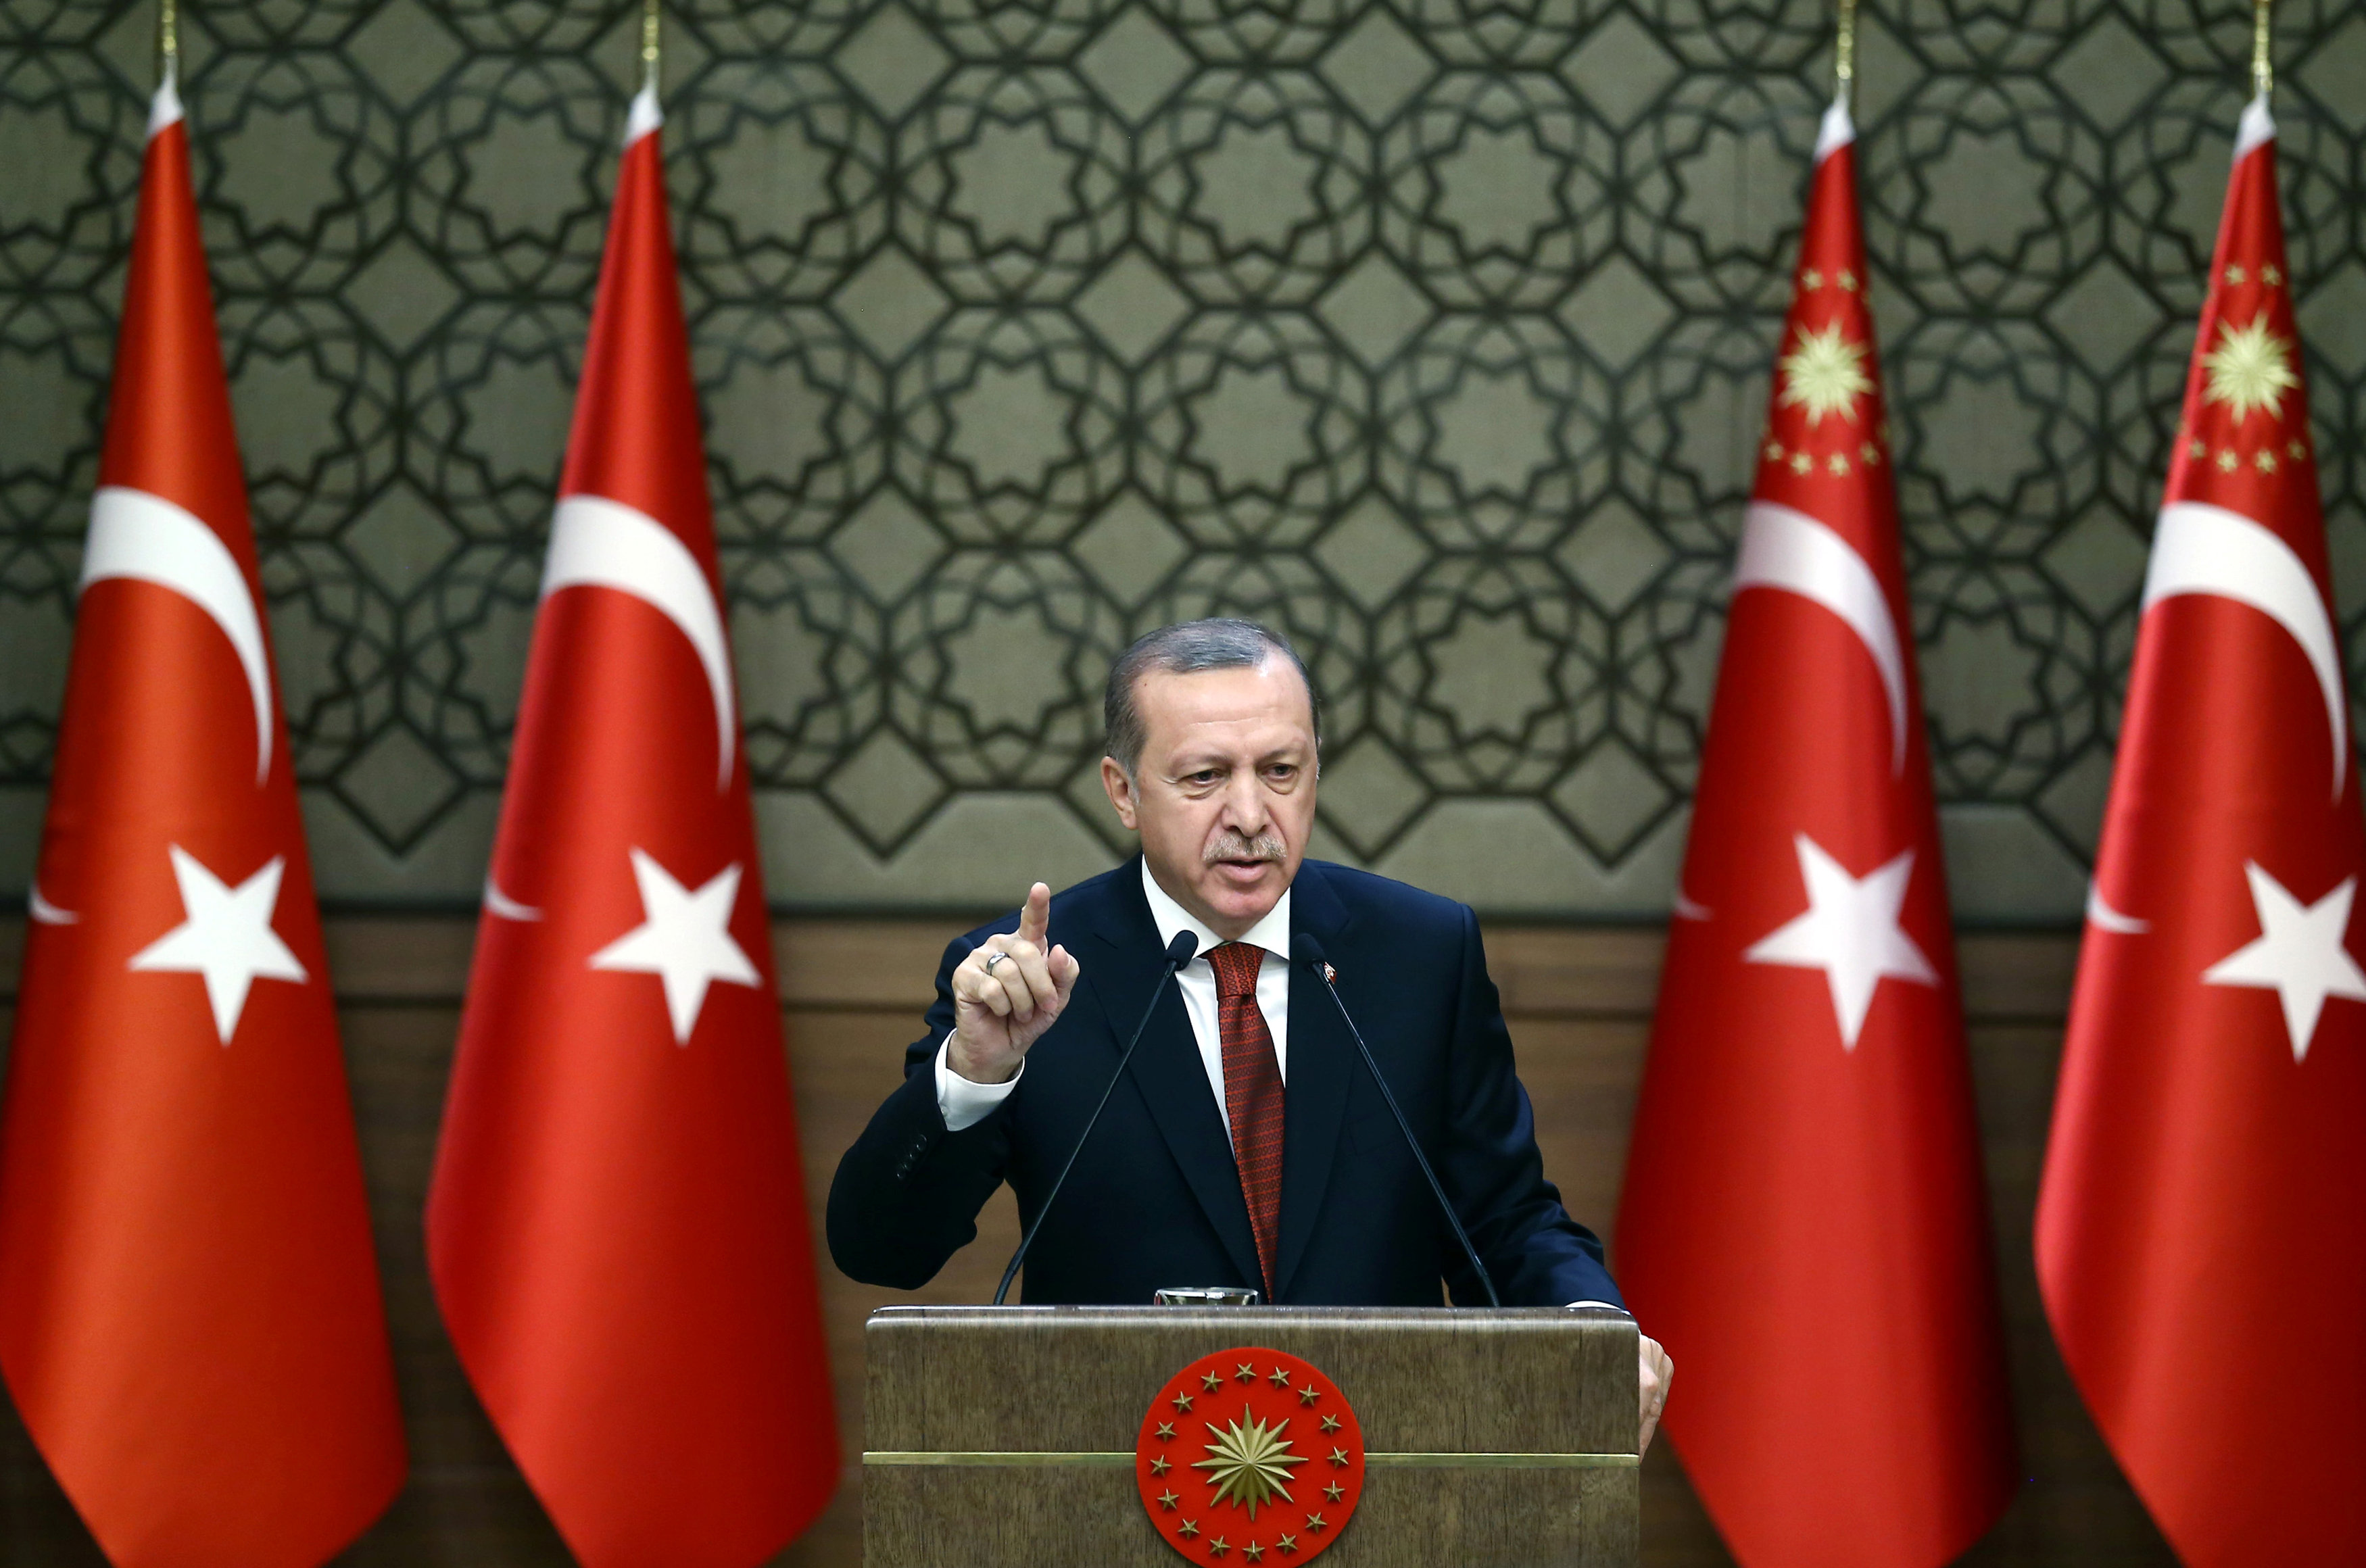 Ο Ερντογάν προχωρά τη συνταγματική μεταρρύθμιση, δημοψήφισμα την άνοιξη